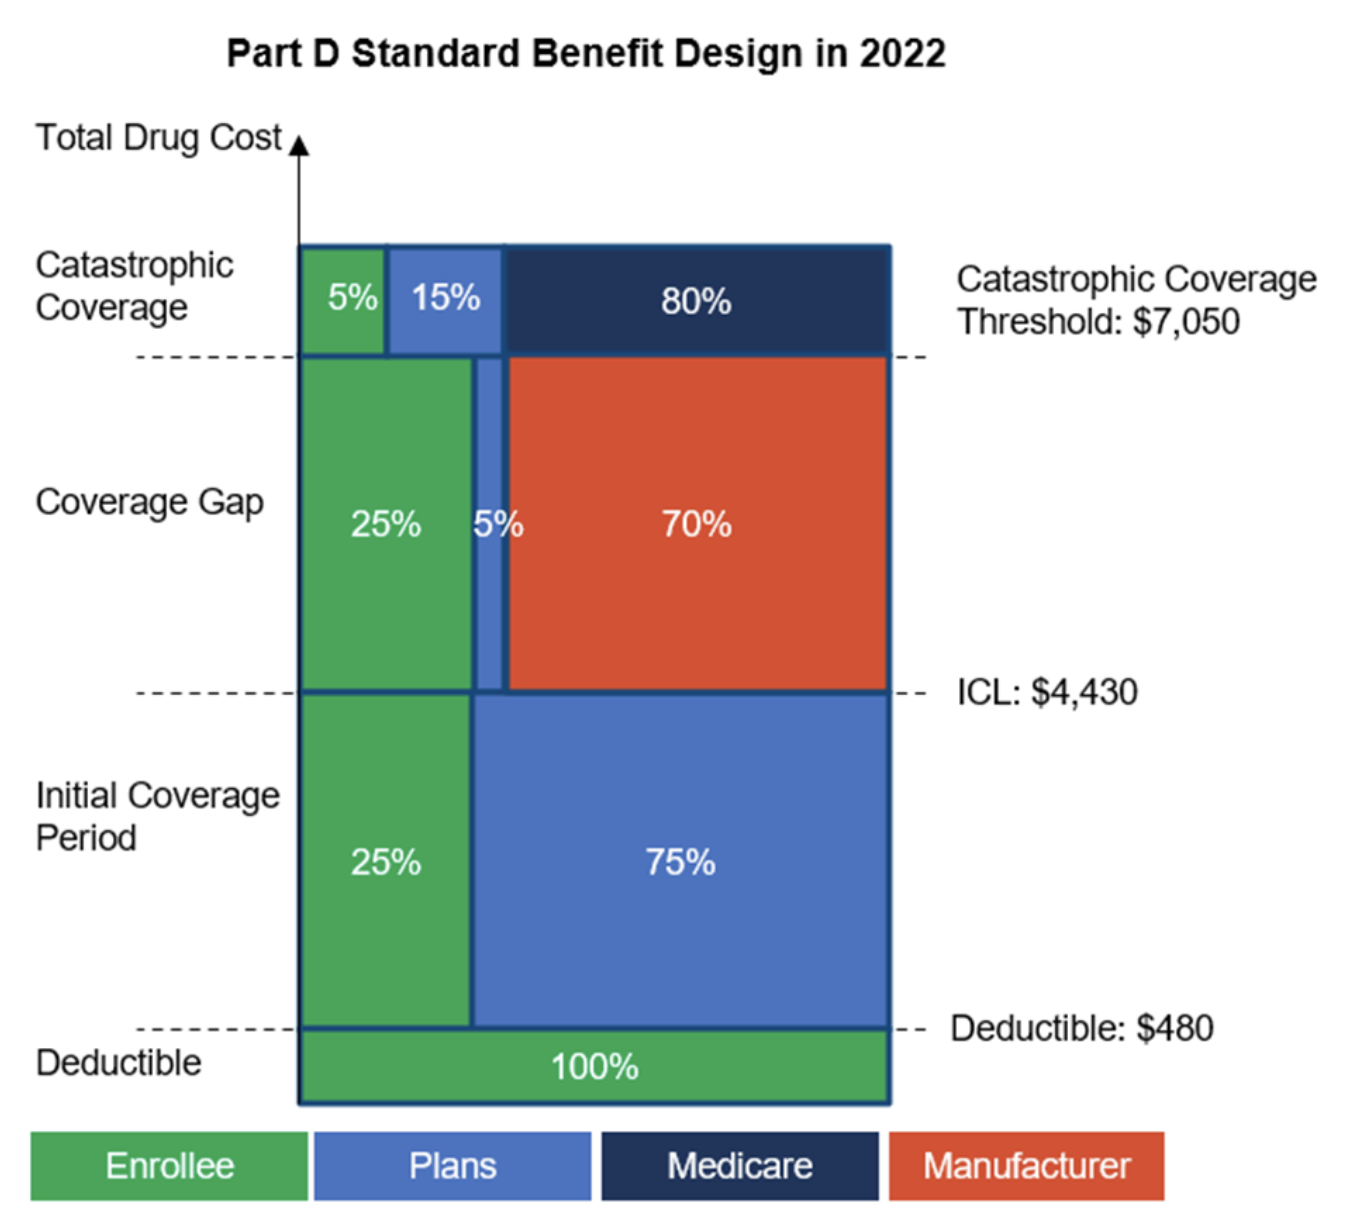 Part D Standard Benefit Design